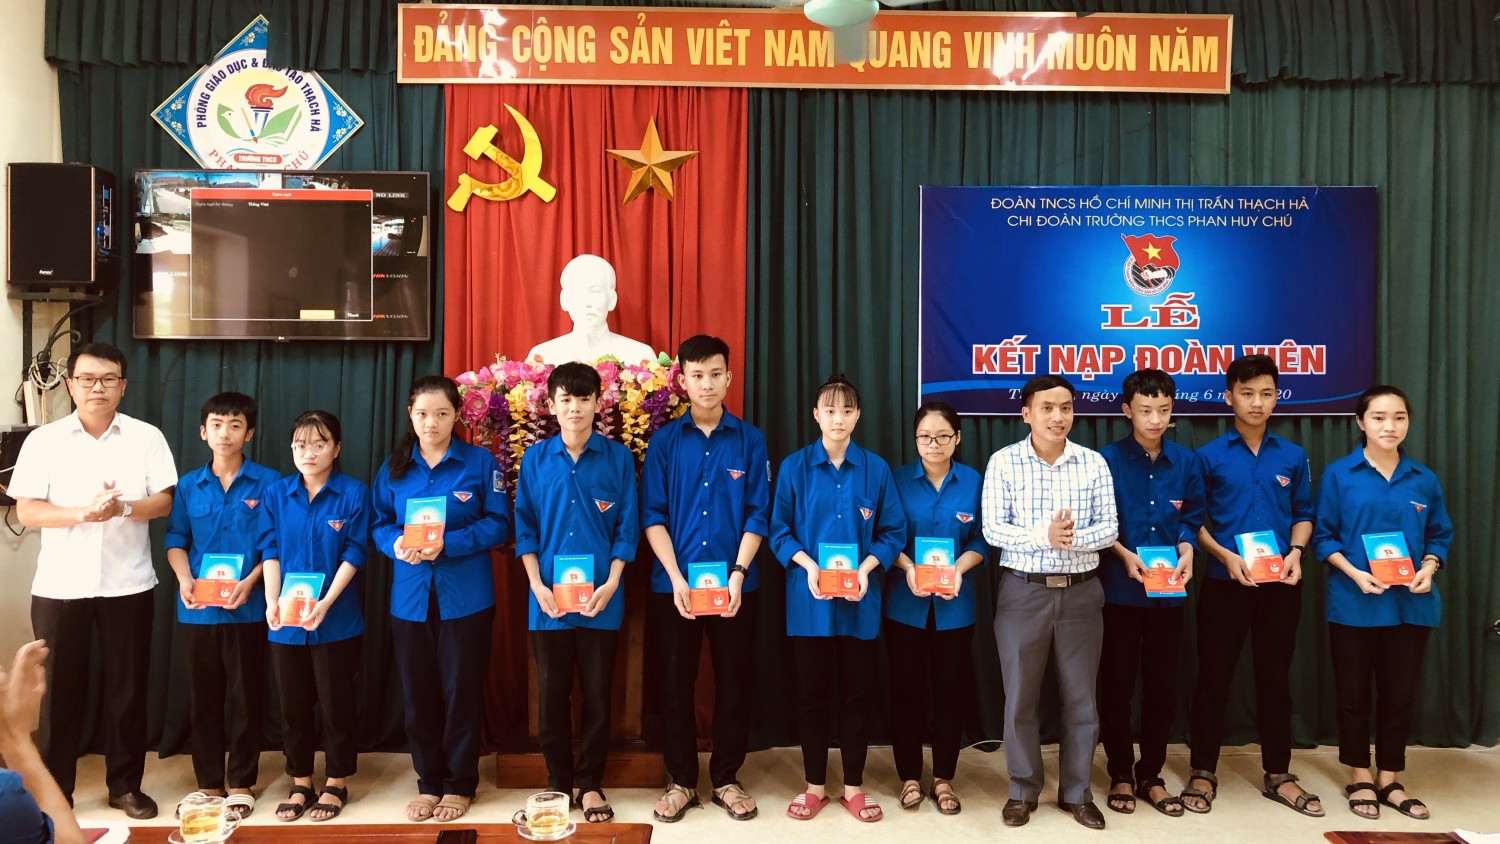 Chi đoàn trường THCS Phan Huy Chú tổ chức Lễ kết nạp đoàn viên